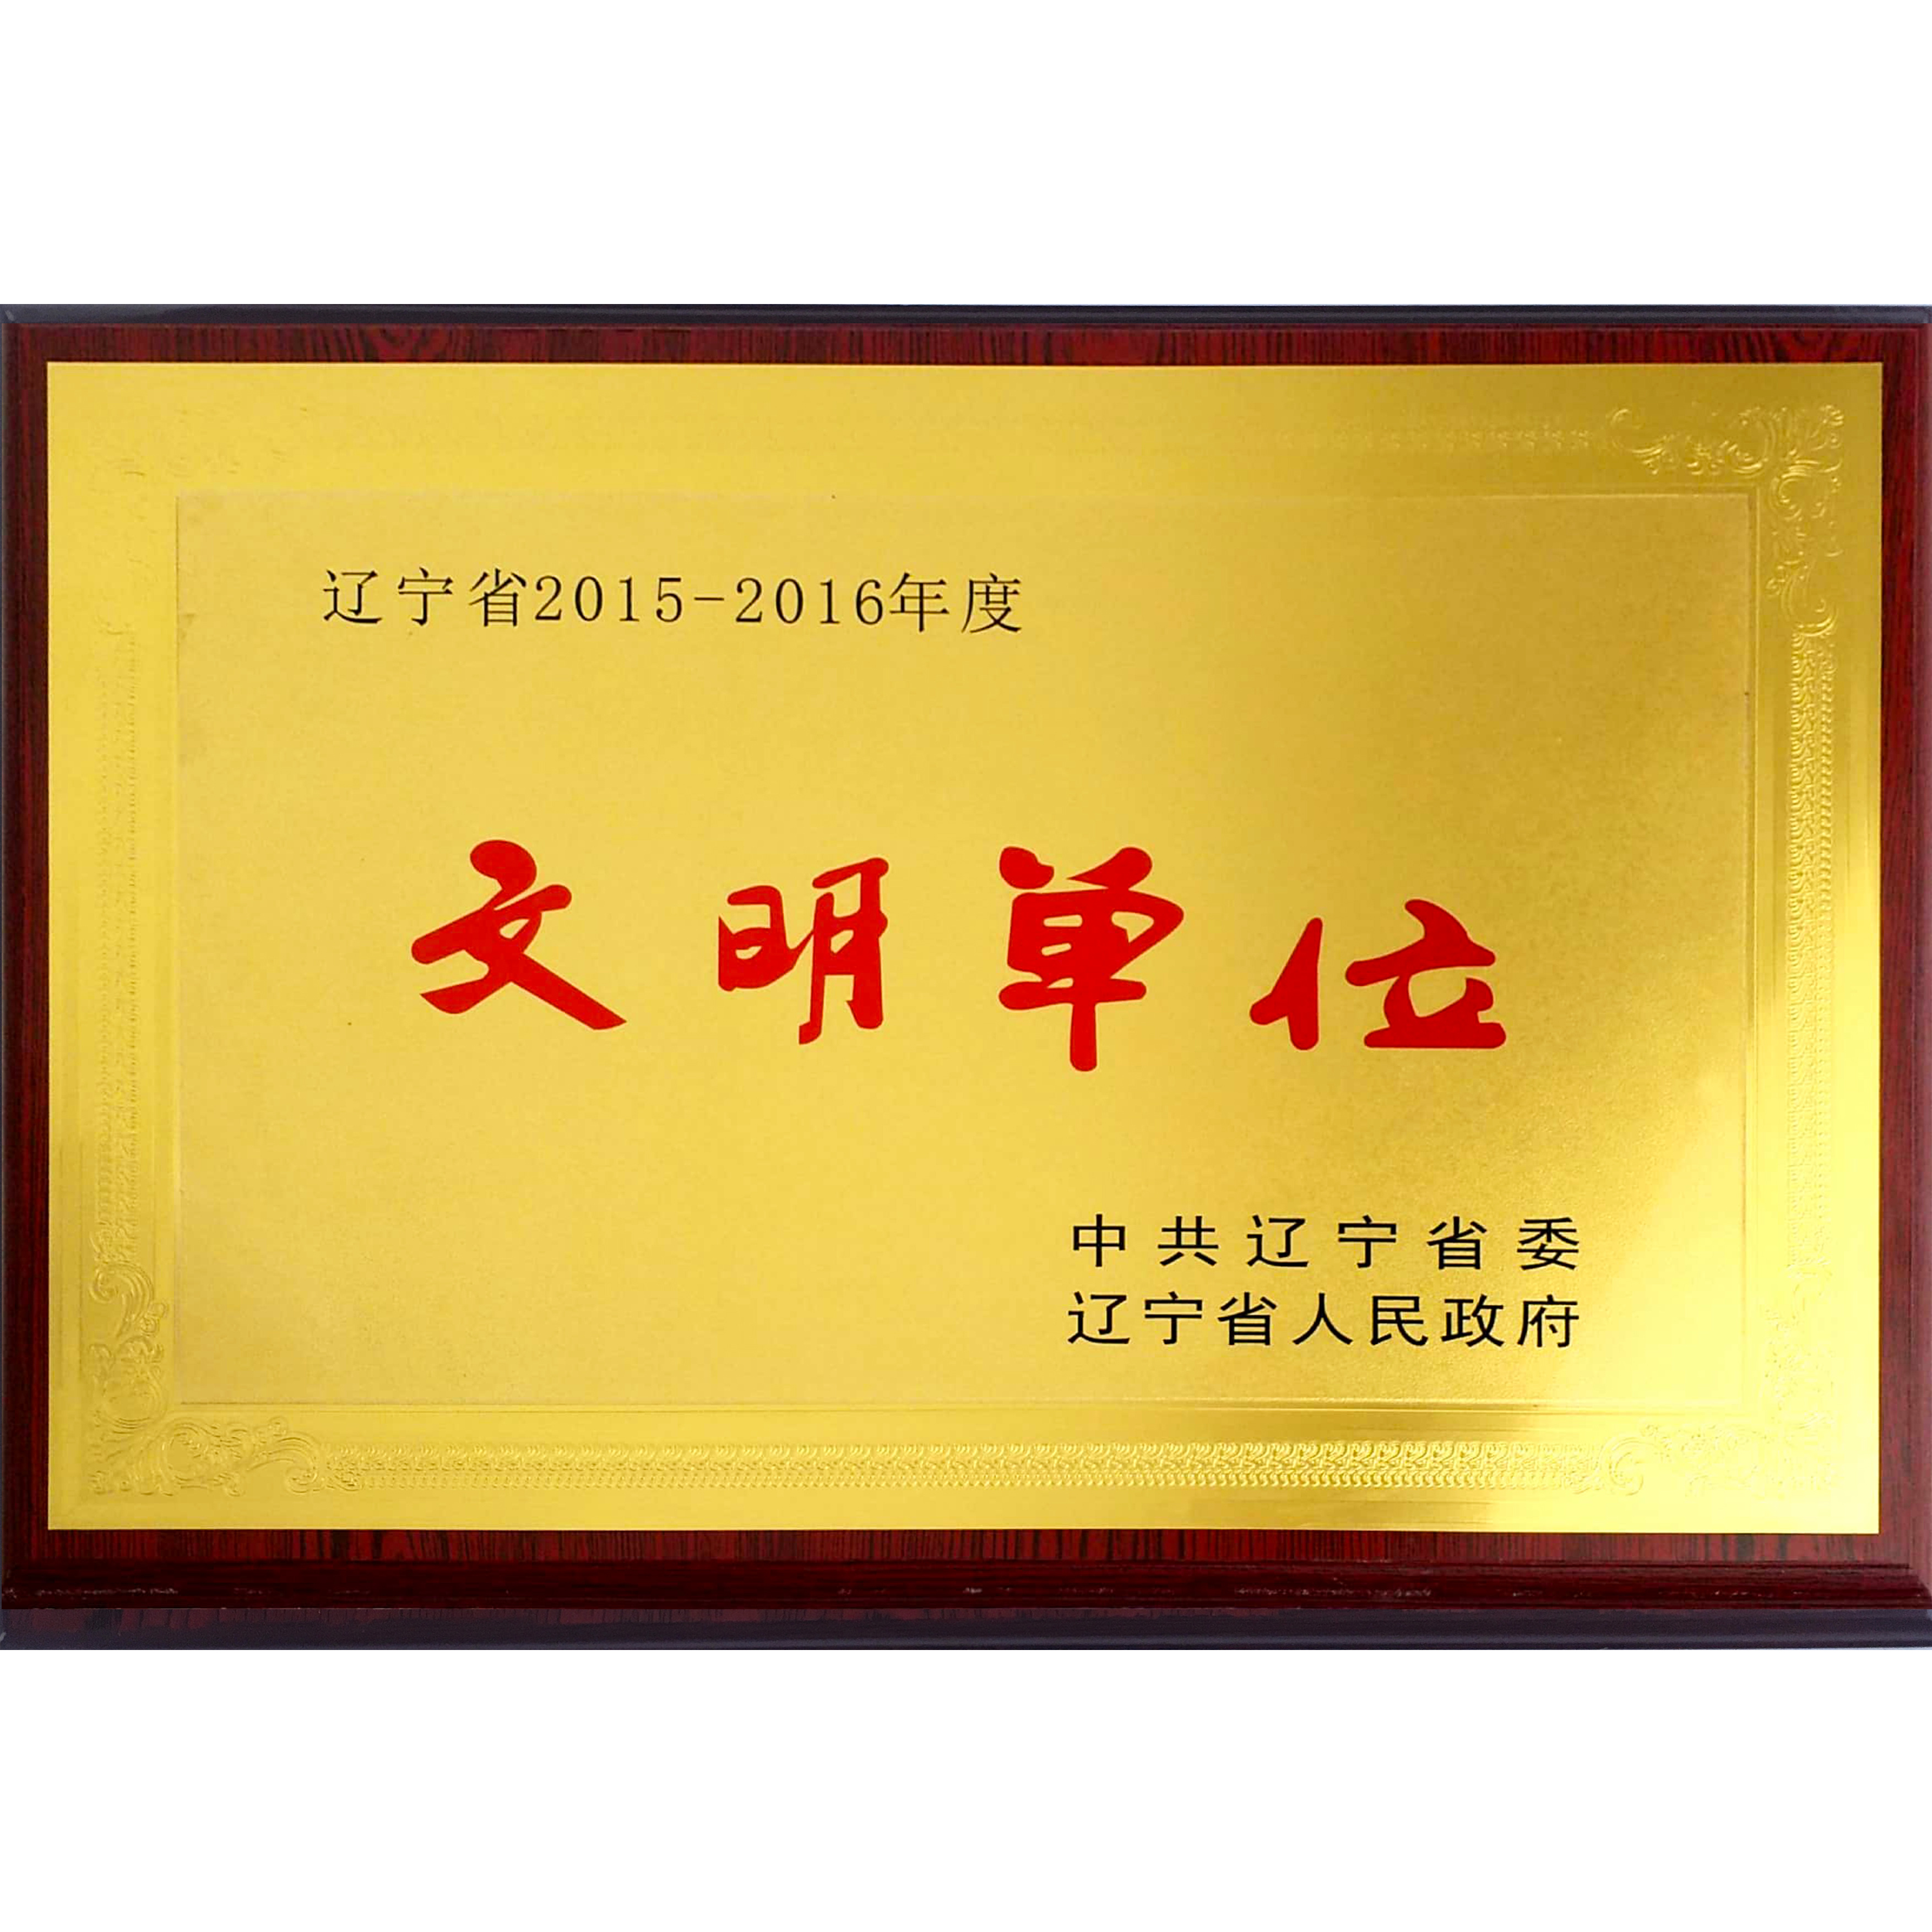 辽宁省2015-2016年度文明单位